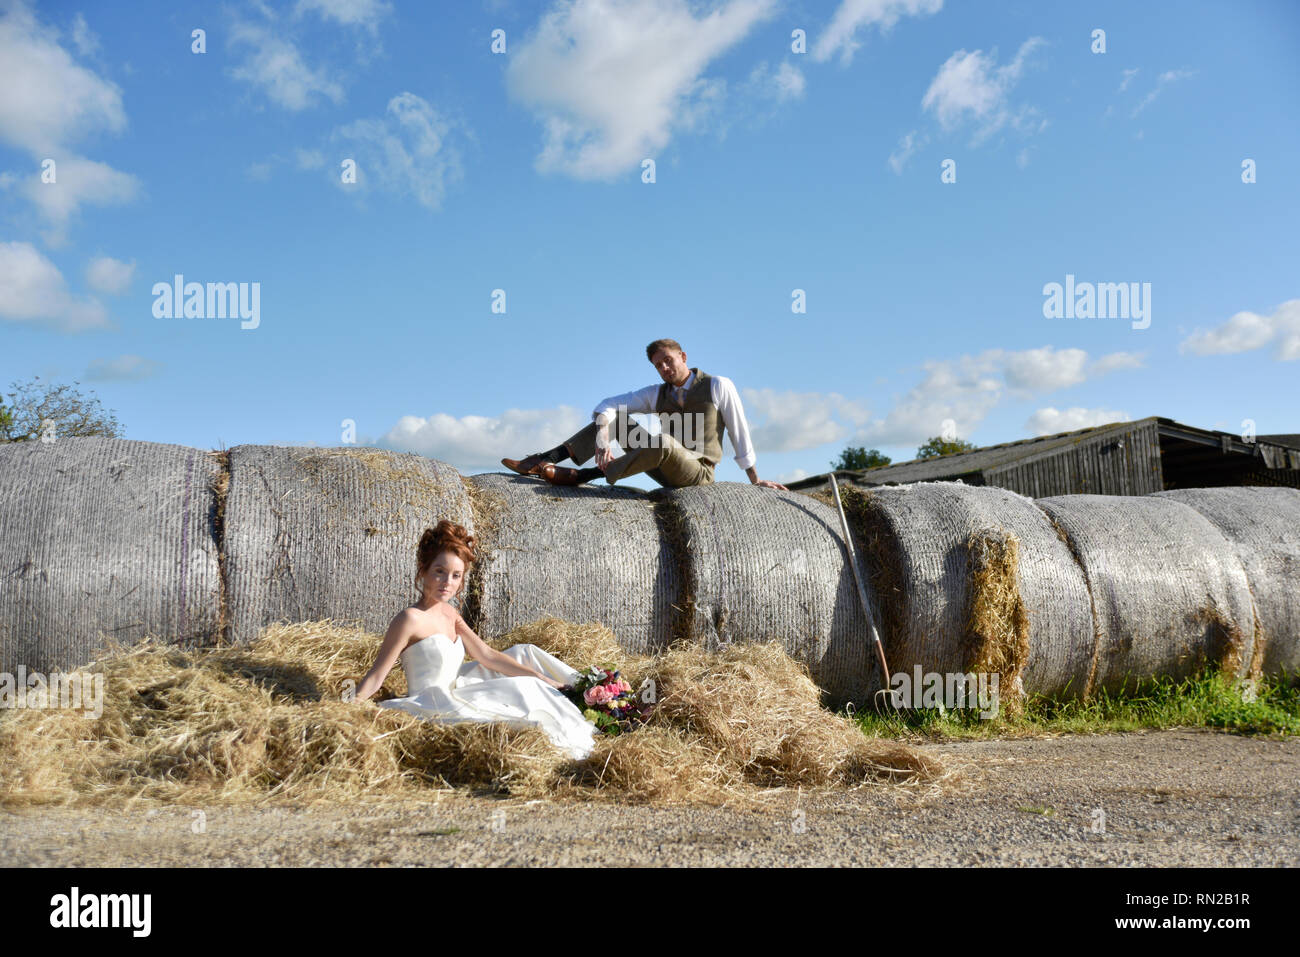 Ein schönes Paar erhalten, in einem romantischen Bauernhof Lage verheiratet - Sie ist eine Rothaarige und wers eine kurze vintage Wedding Dress. Er ist gross und hat Tatoos Stockfoto